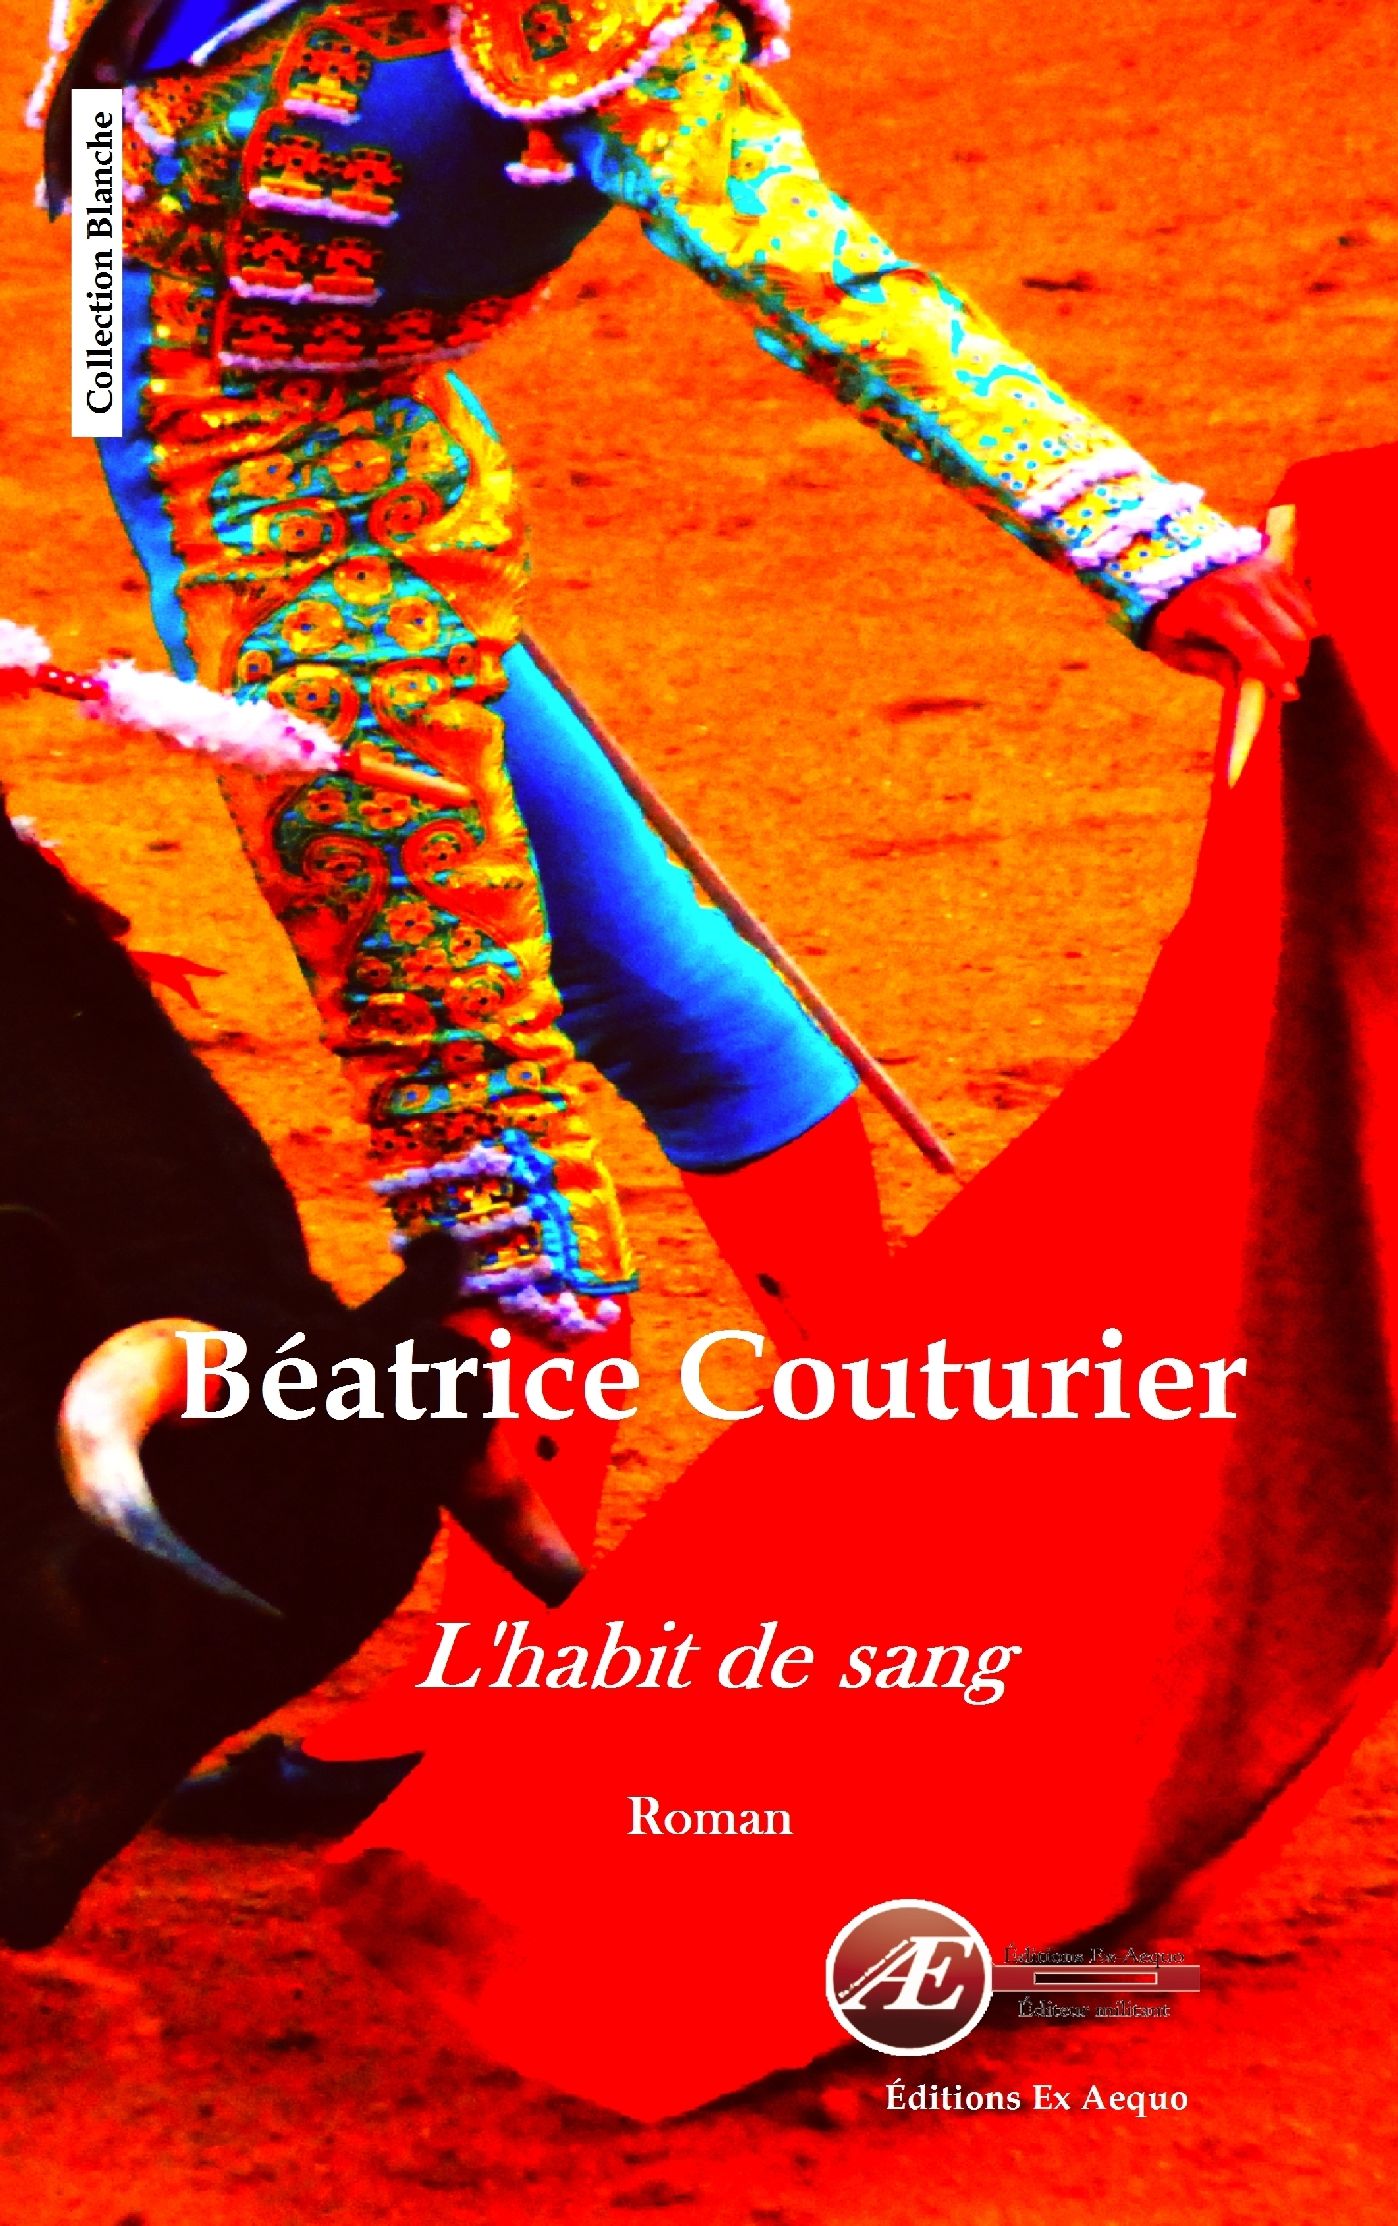 You are currently viewing L’habit de sang, de Béatrice Couturier